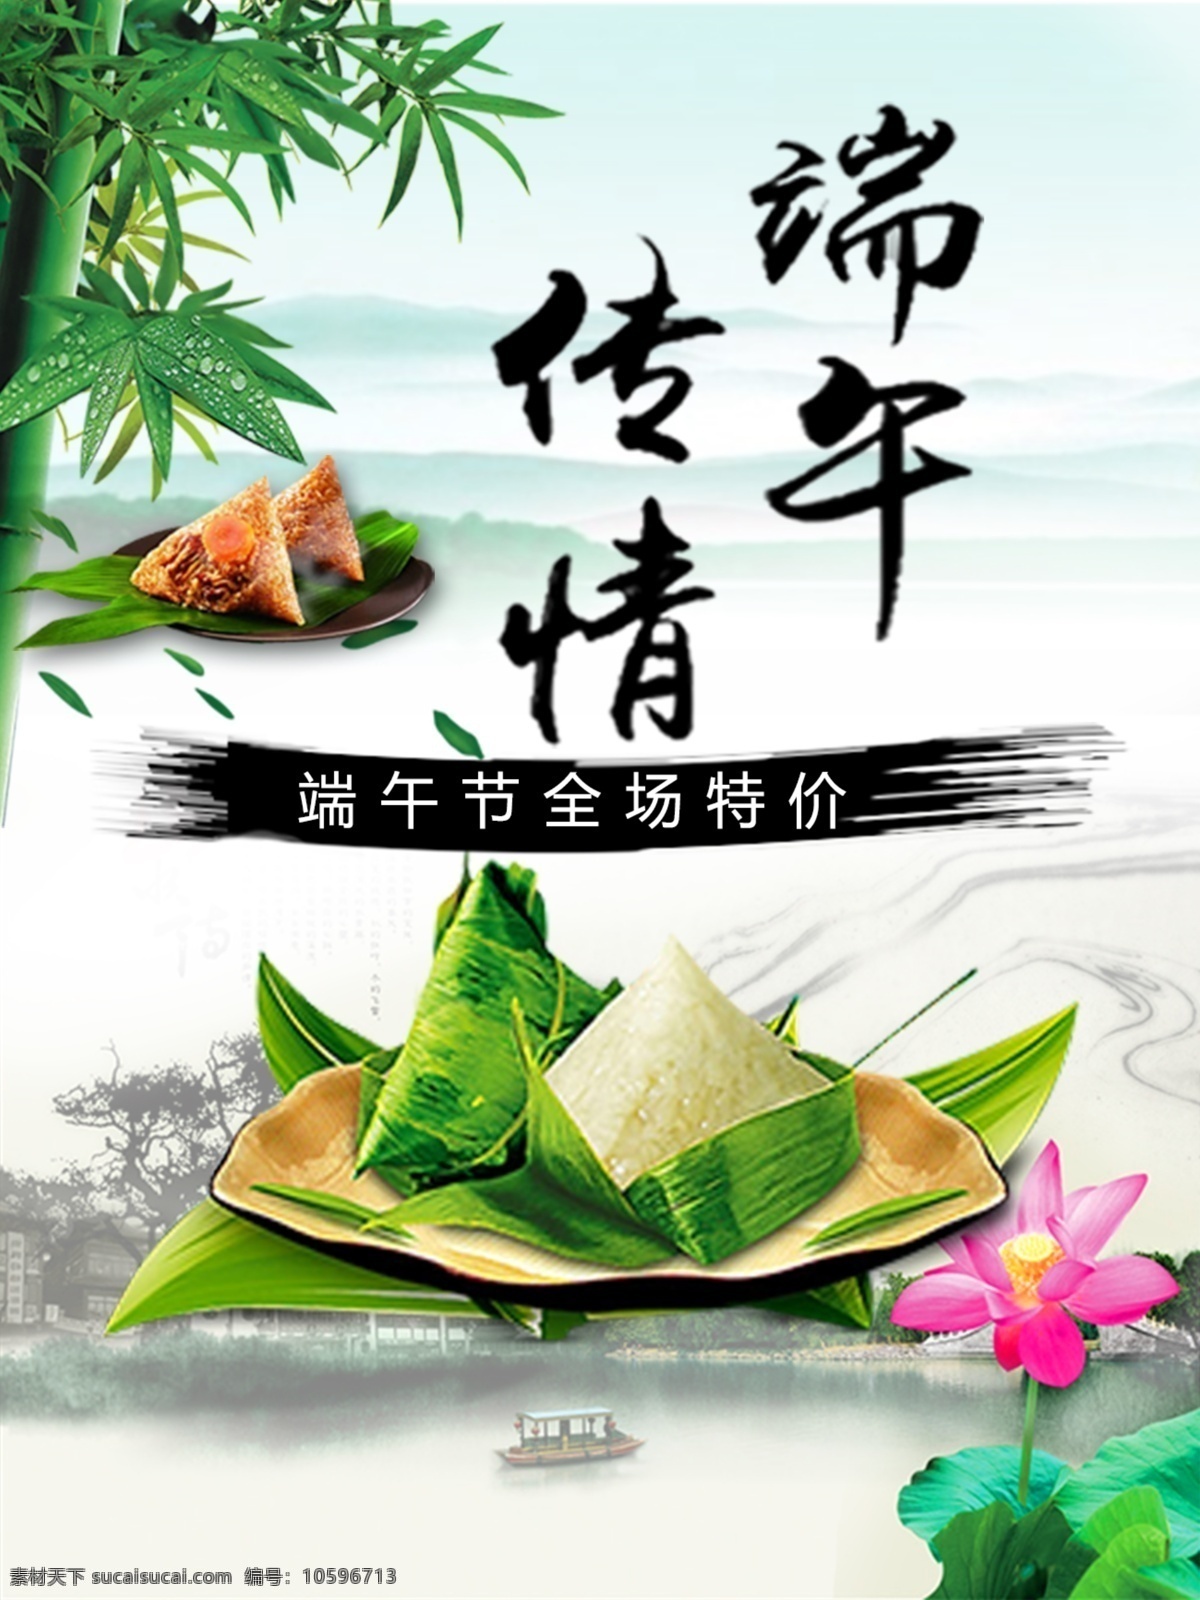 端午 传情 商场促销 海报 端午节 粽子 竹子